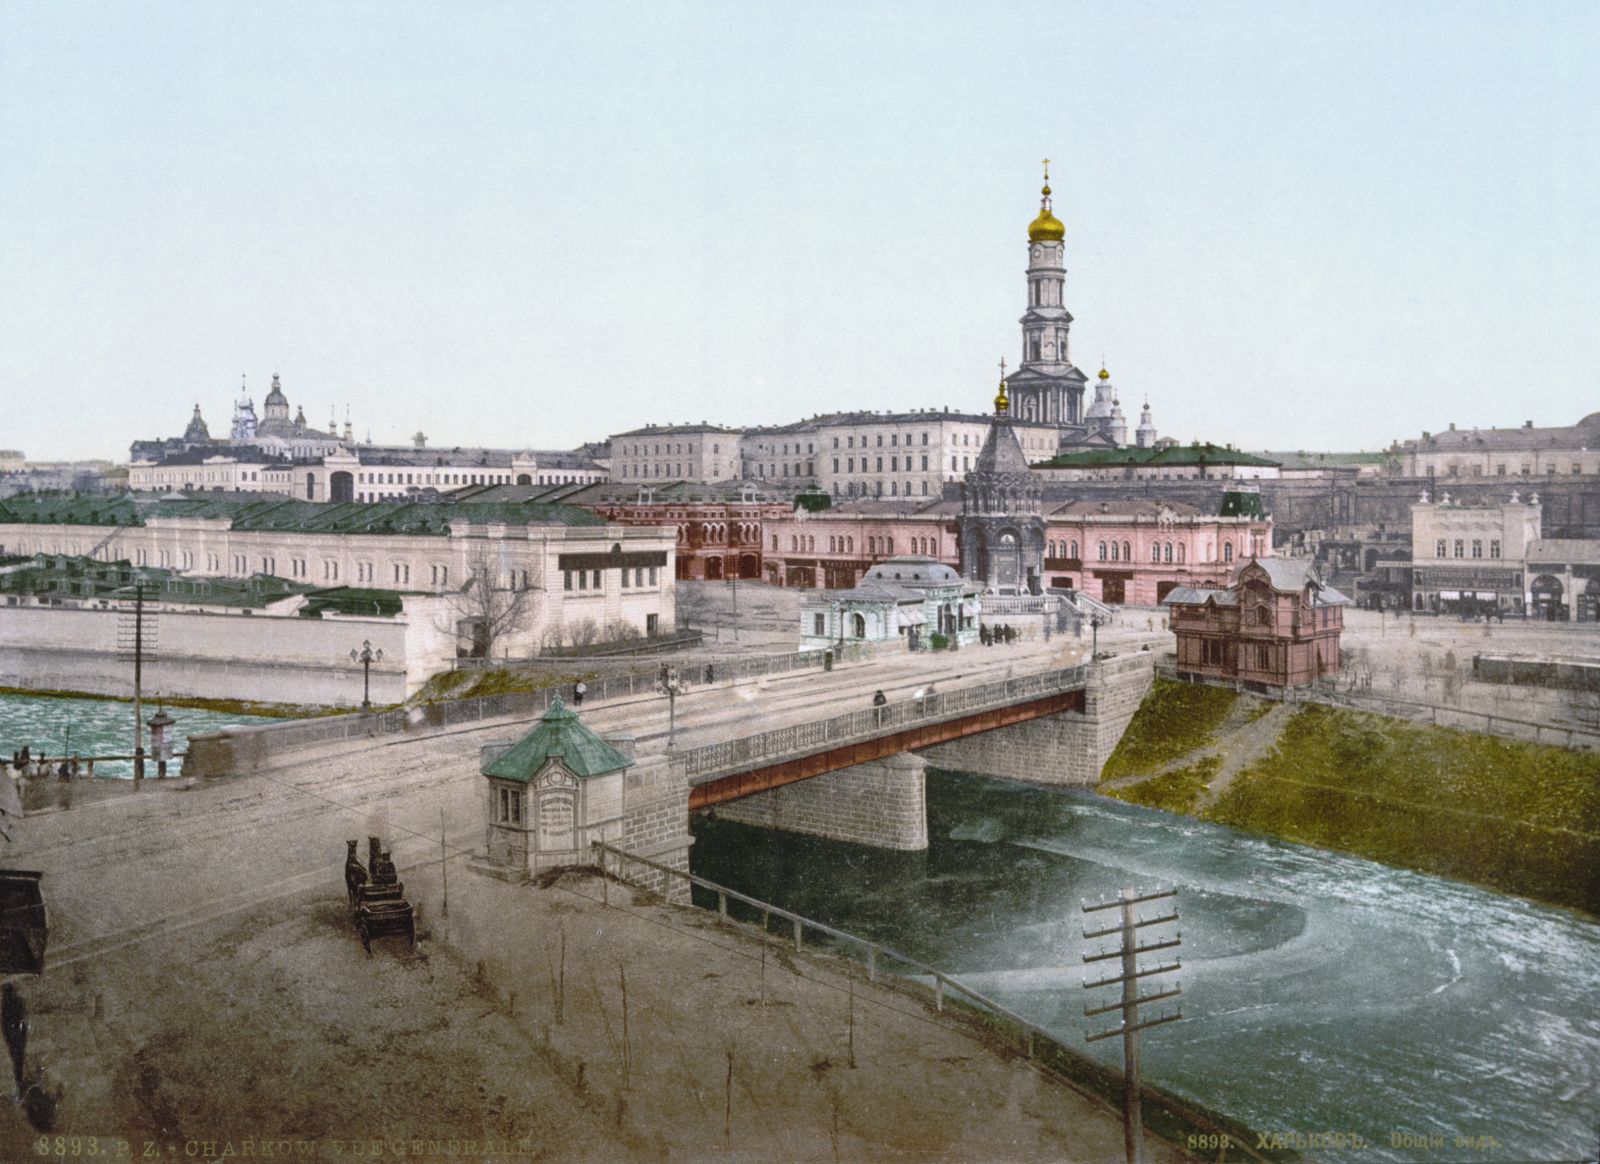 Аж до радянських часів собор домінував над центром Харкова. Його дзвіницю було видно відусюди.